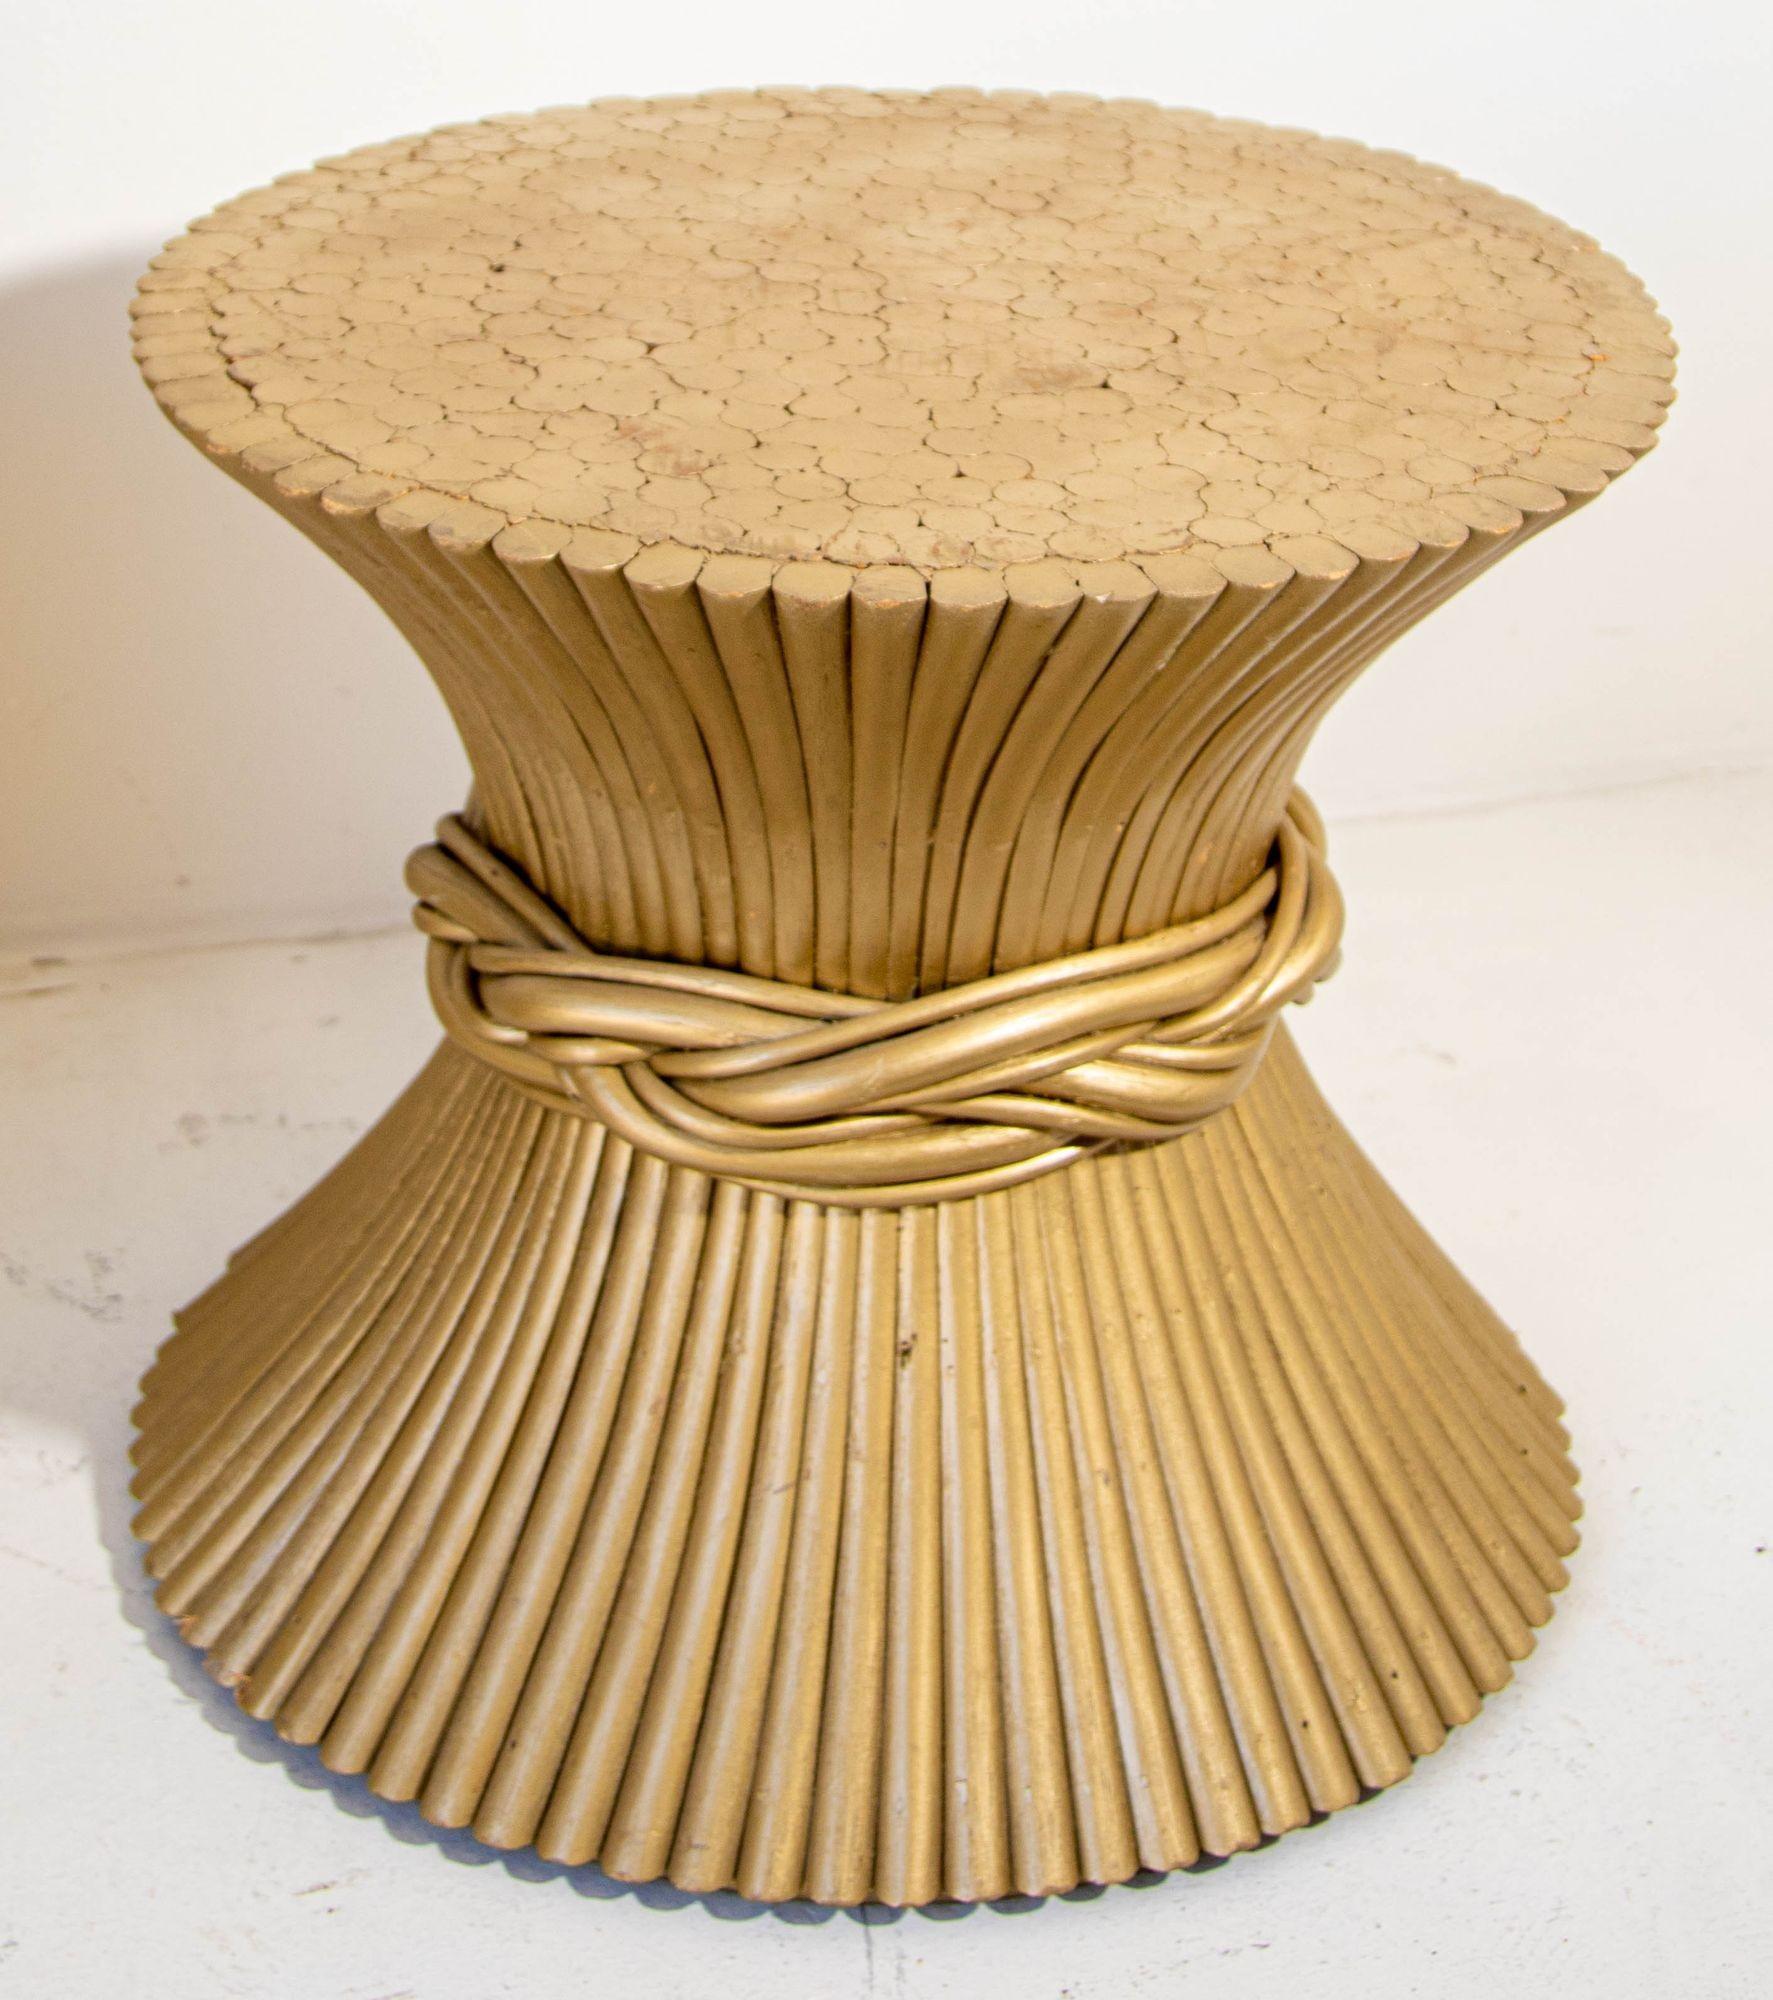 Große 1970er John Mcguire Stil Garbe von Weizen Bambus runden Seite oder Ende, Couchtische.
Paar große Couchtisch vergoldet gemalt Garbe von Bambus Weizen Seite, Ende, Beistelltische runden Sockeln zugeschrieben McGuire.
Fügen Sie ein großes Stück